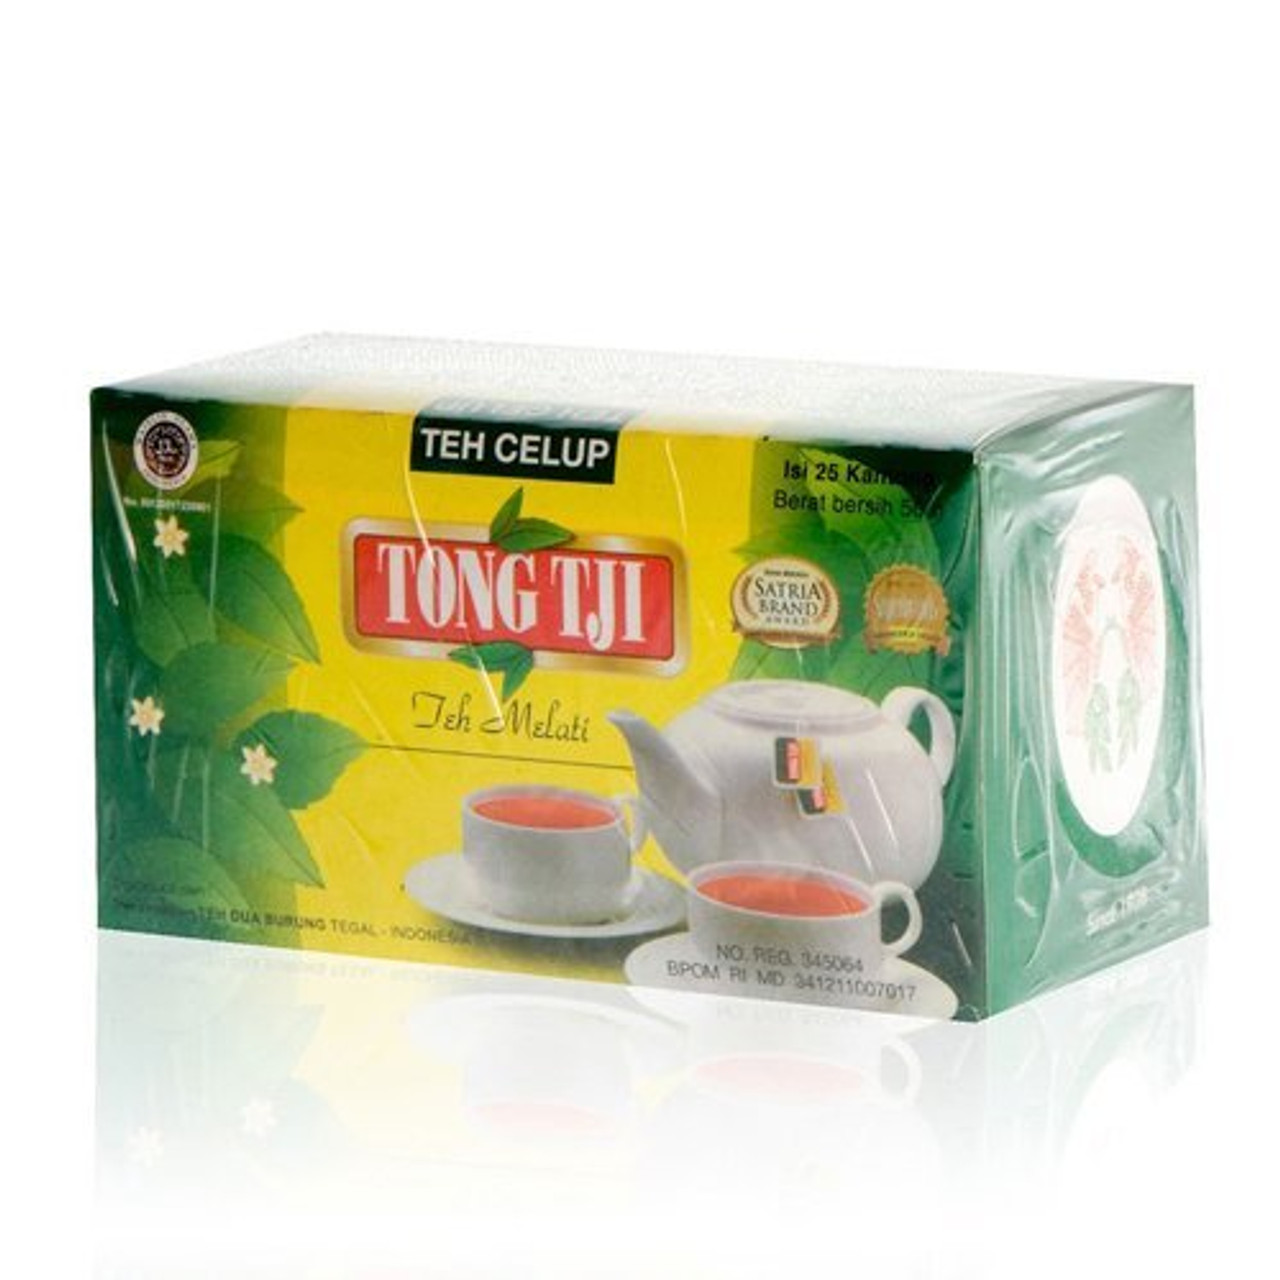 Tong Tji jasmine Tea 25-ct, with Envelope - UD Jawa Berkah Makmur